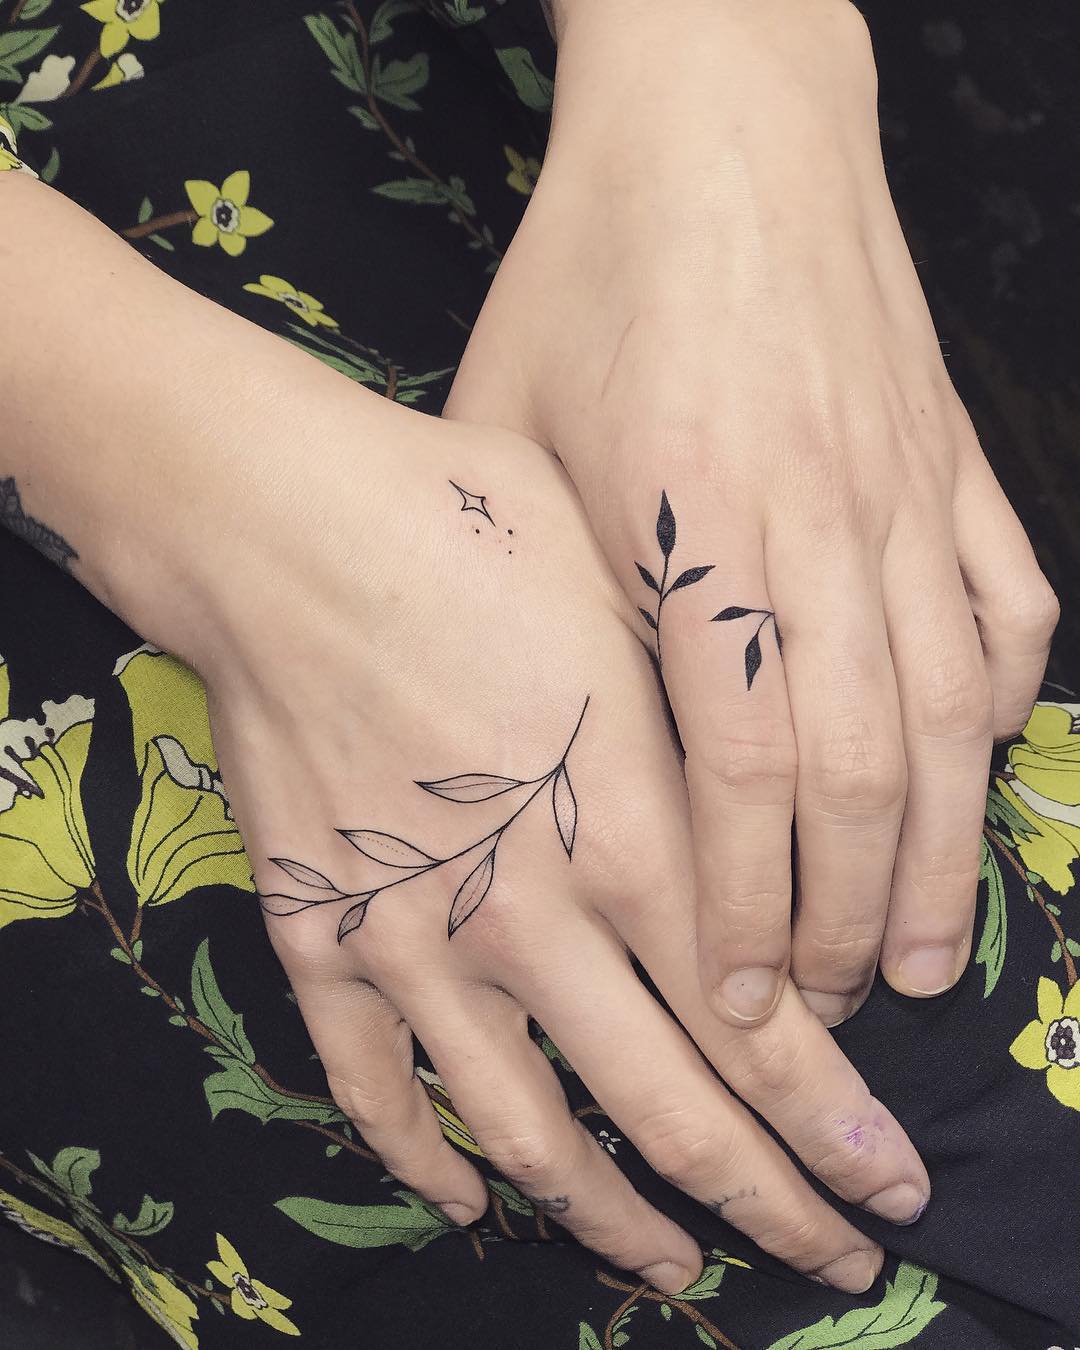 Zayn Malik Shows Off New 'Love' Hand Tattoo